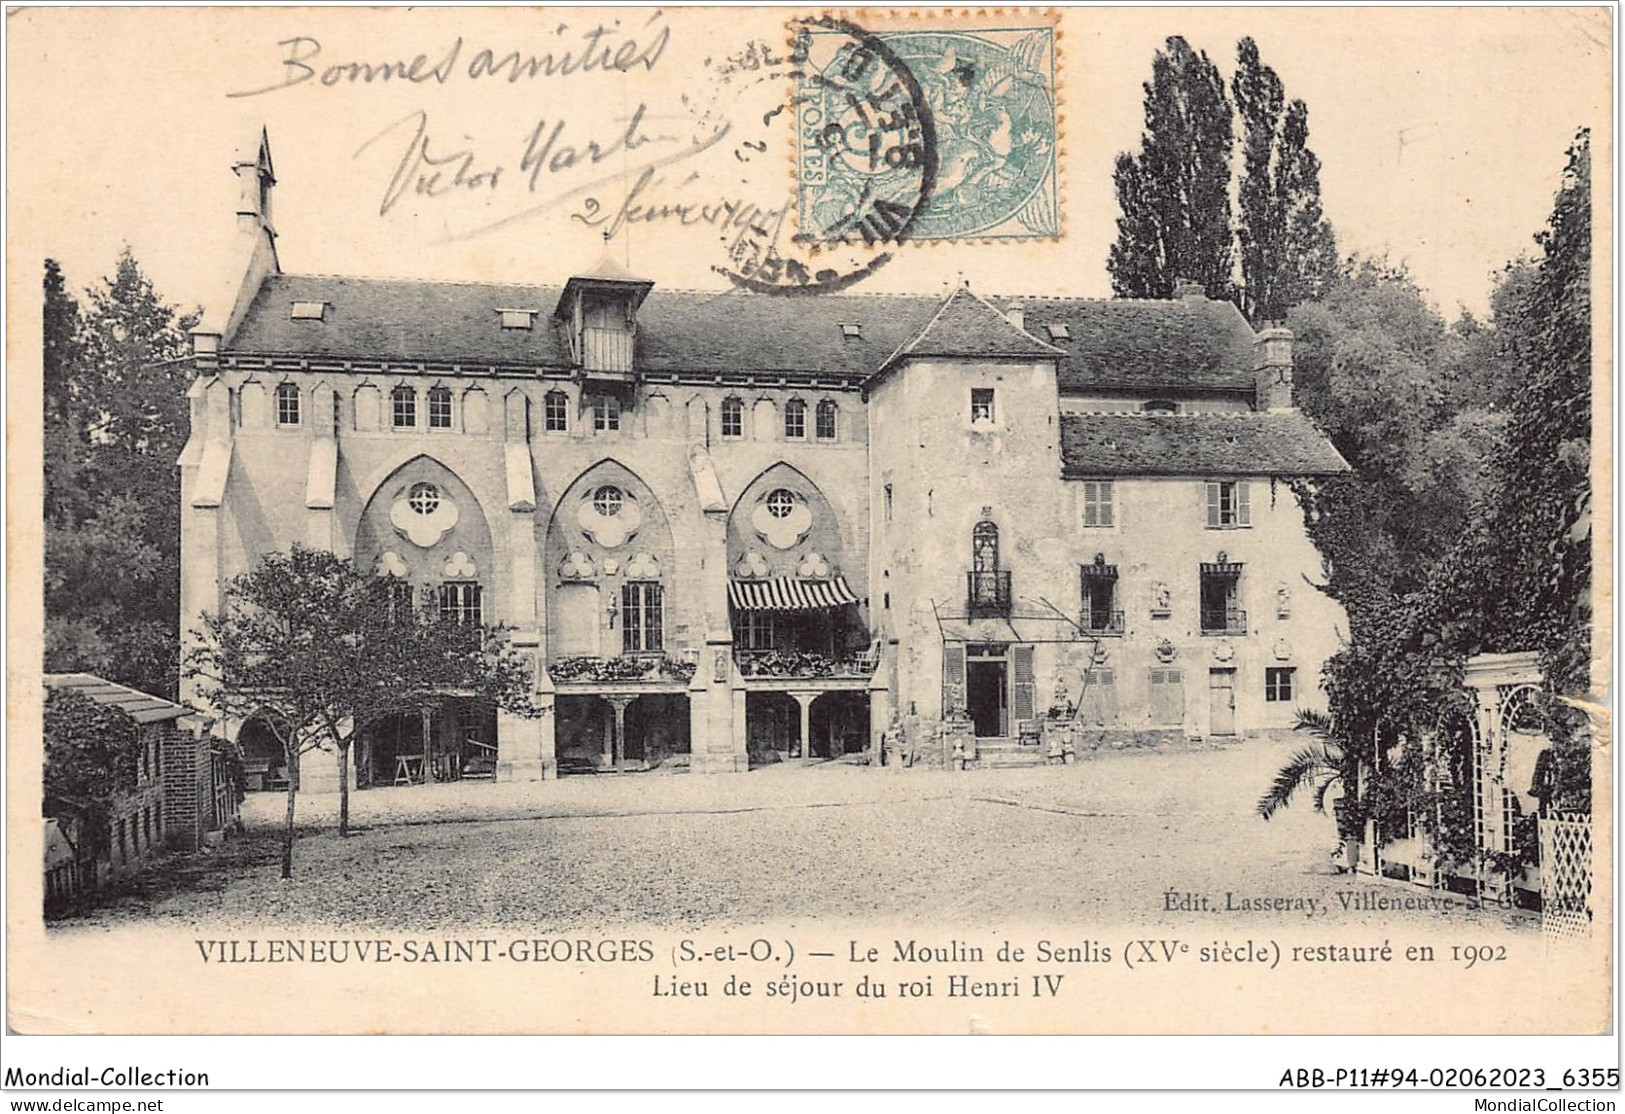 ABBP11-94-0946 - VILLENEUVE-SAINT-GEORGES - Le Moulin De Senlis - Restauré En 1902 - Lieu De Sejour Du Roi Henri IV - Villeneuve Saint Georges